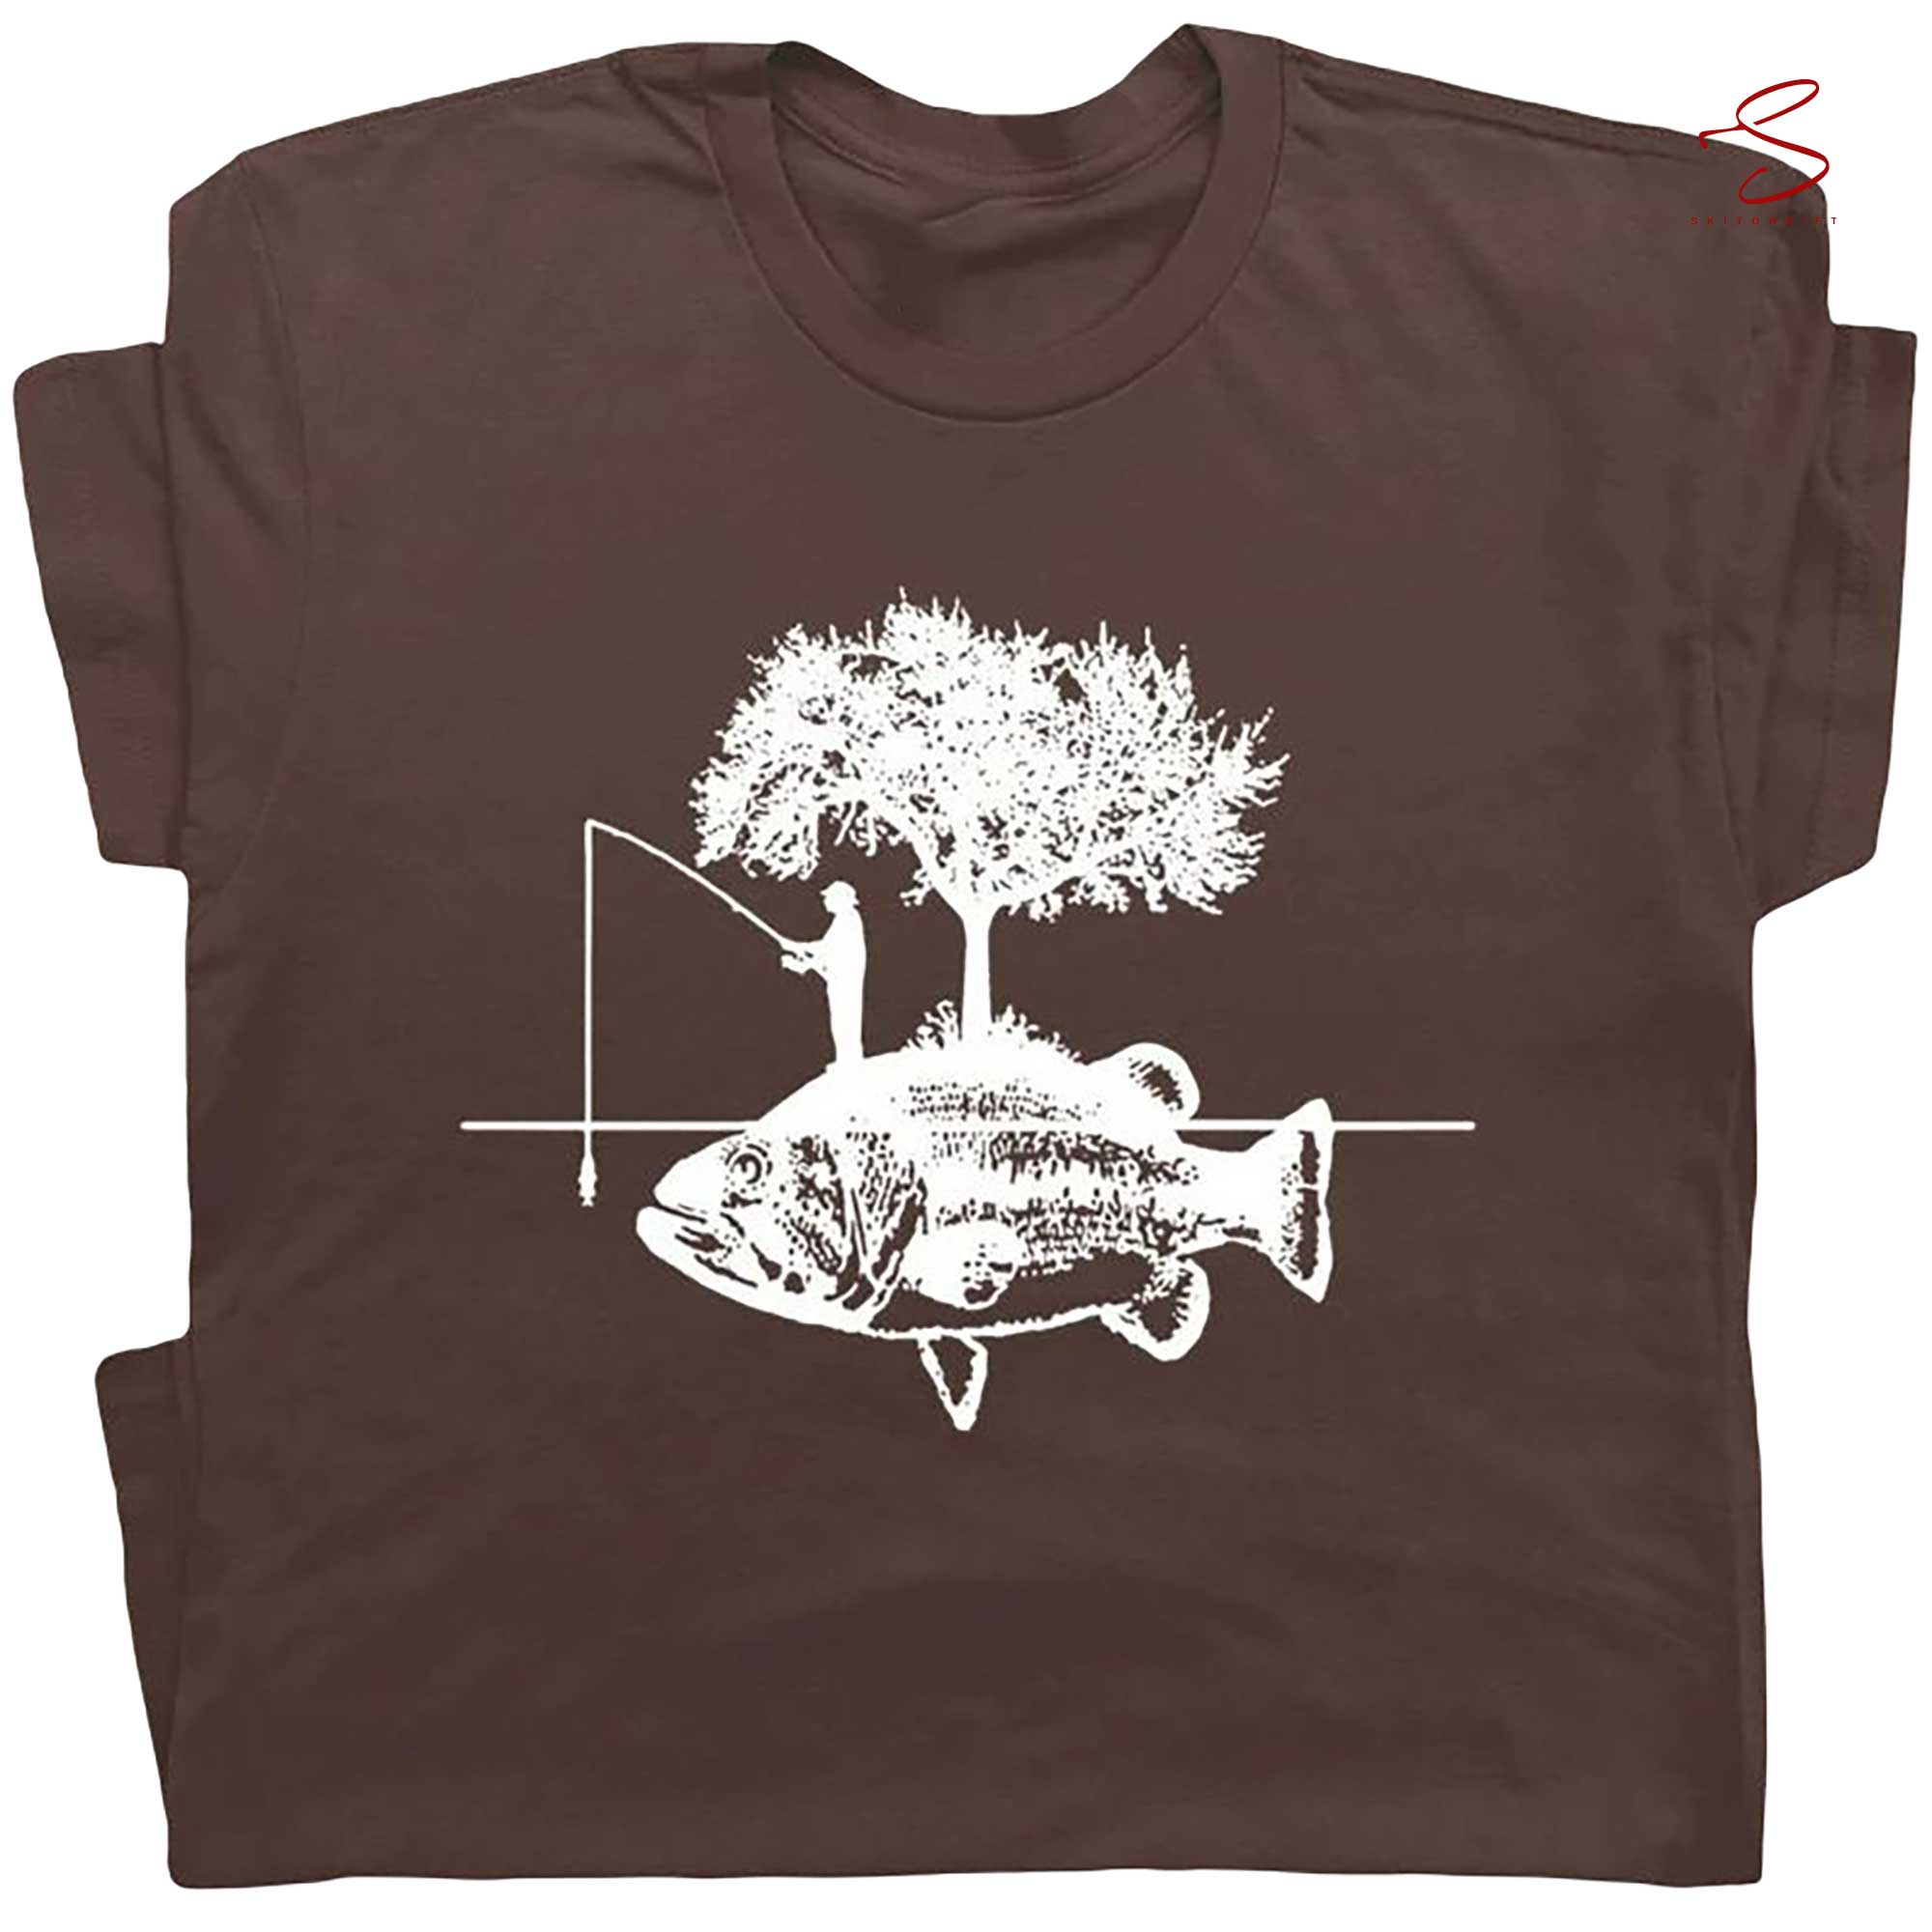 Funny Fly Fishing Sweatshirt Gift for Men Fishing Graphic Tee Fisherman  Gifts Bass Fishing Shirt Fathers Day Gift Shirt Guys Fishing Gifts 